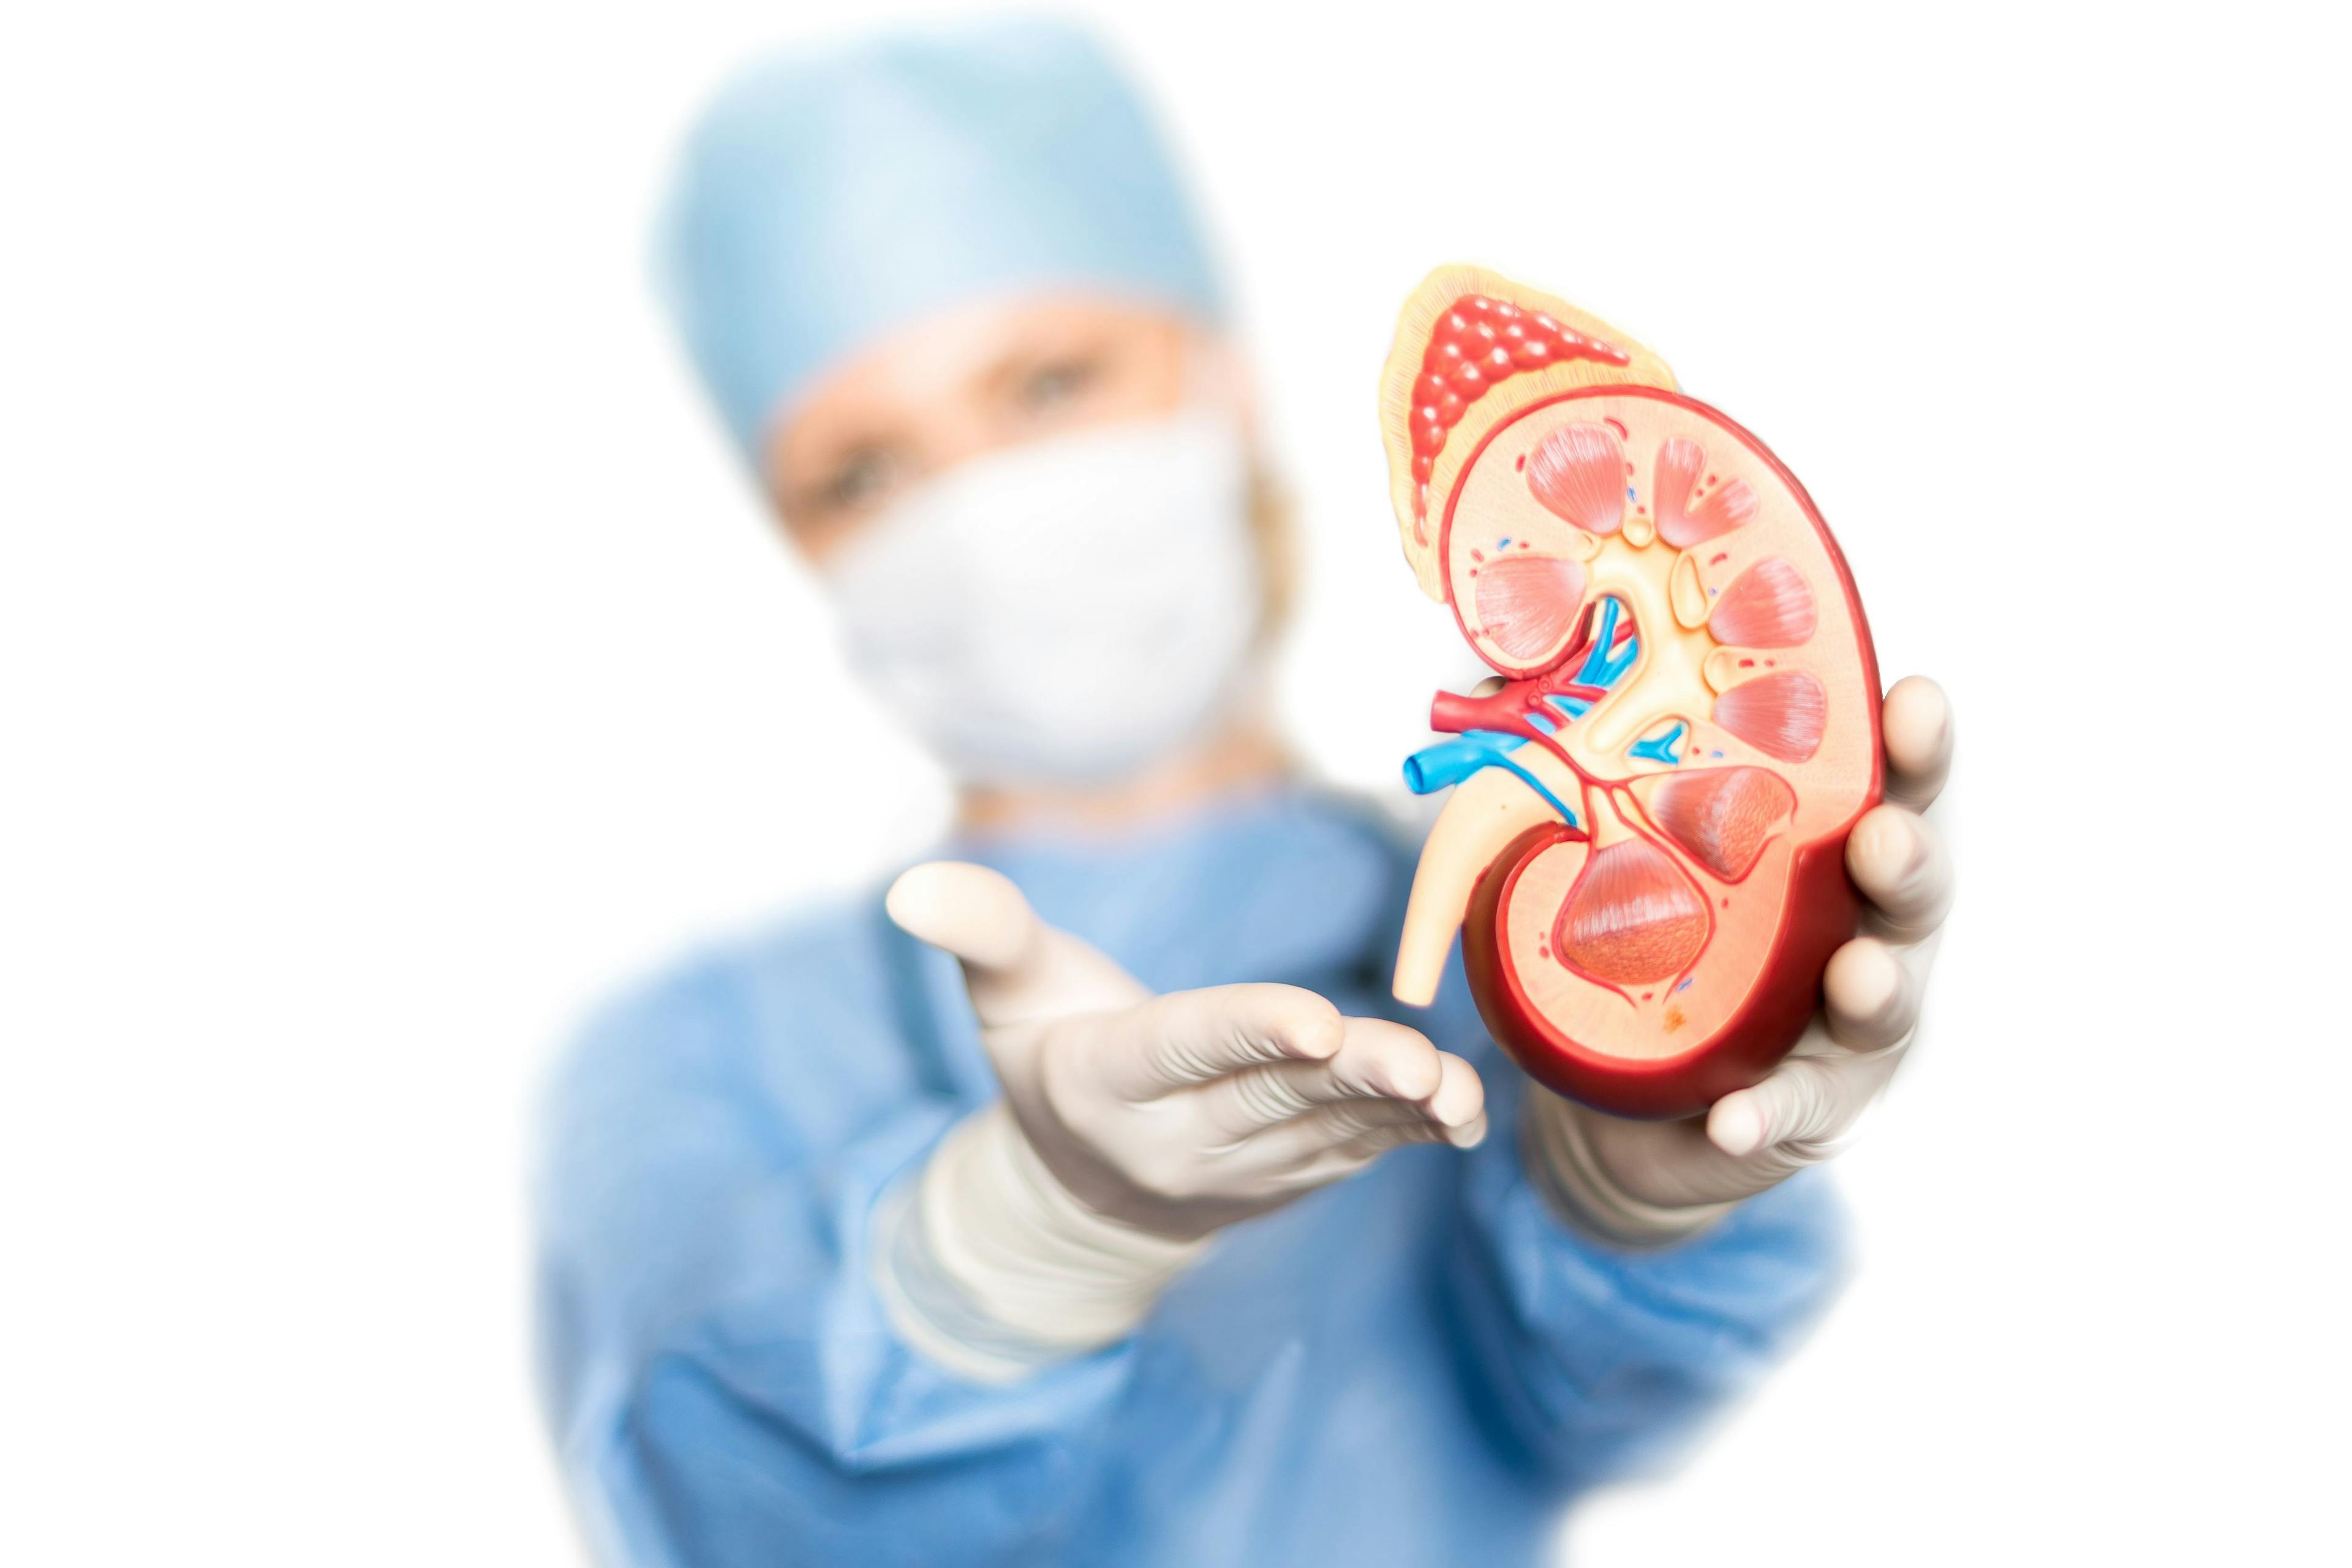 Doctor holding model of kidney